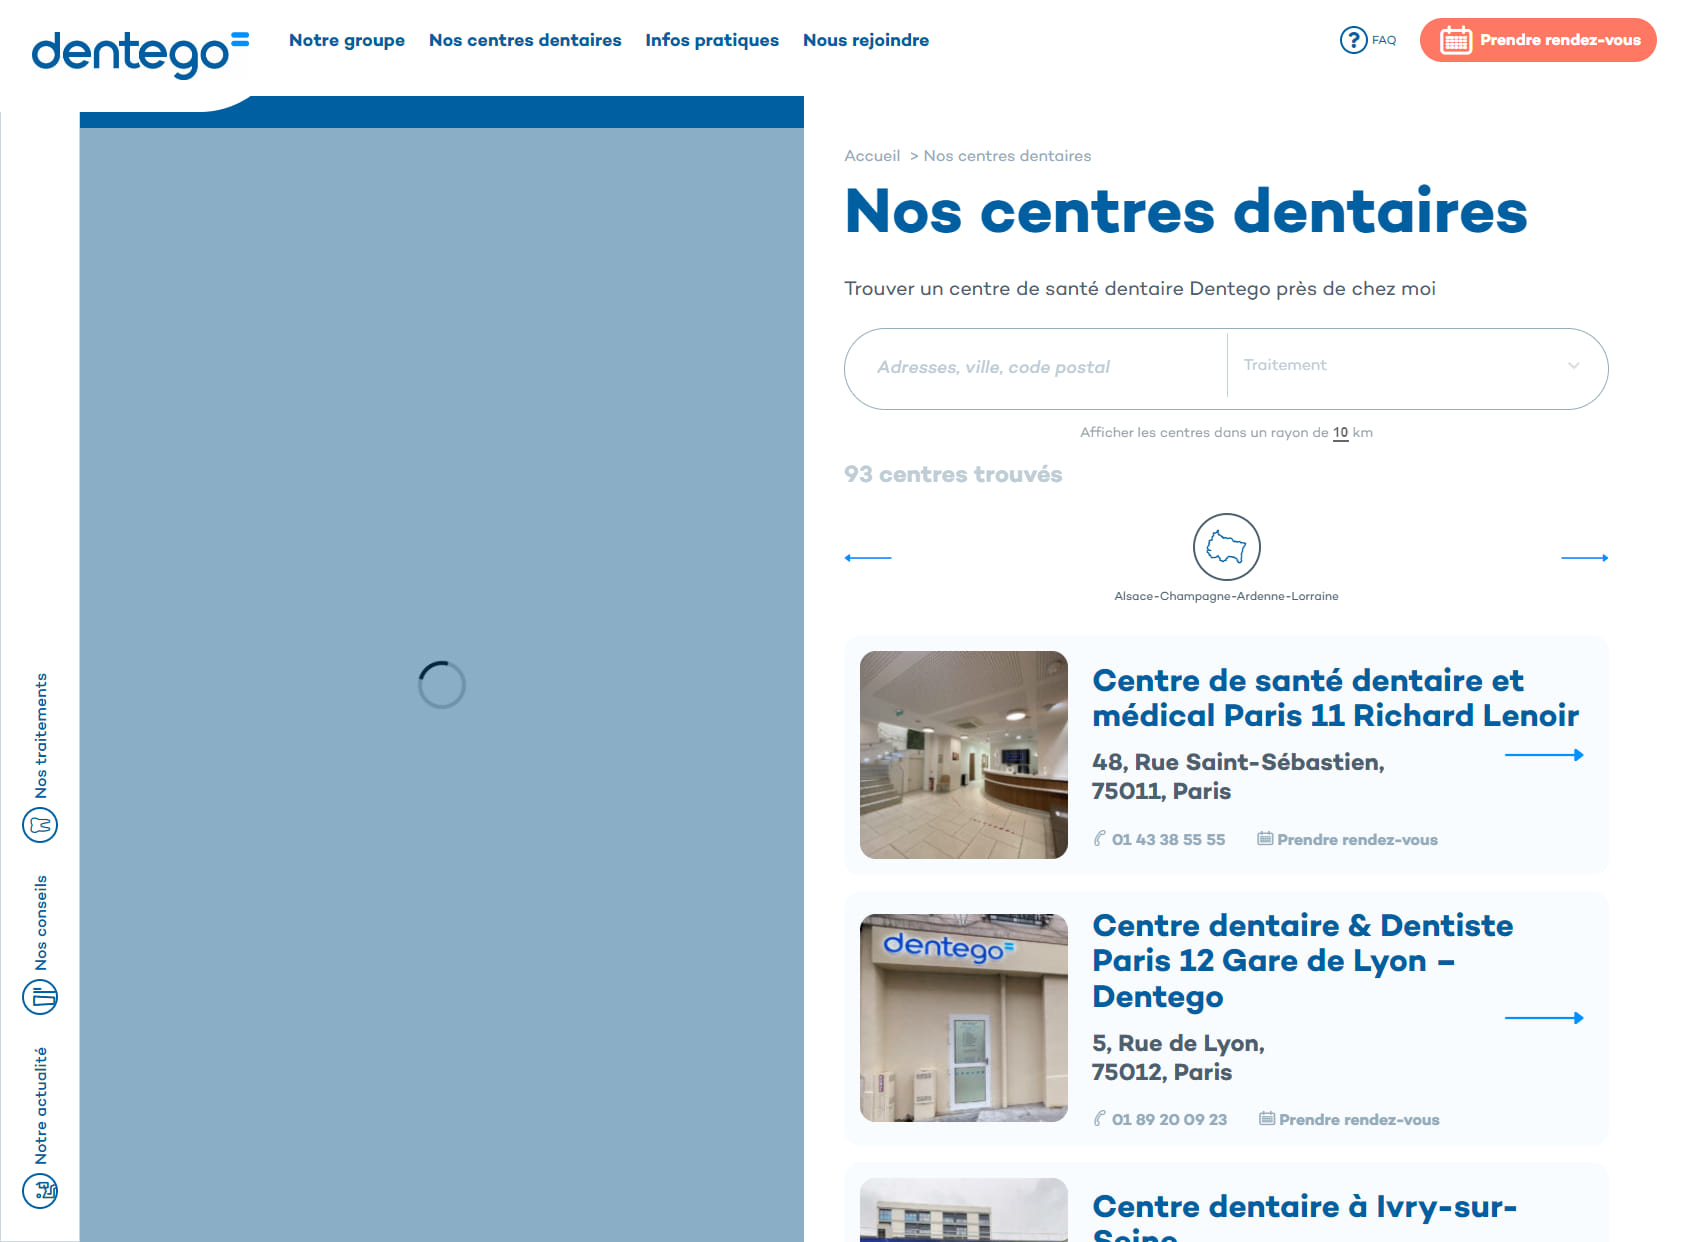 Centre dentaire Dijon - Dentego